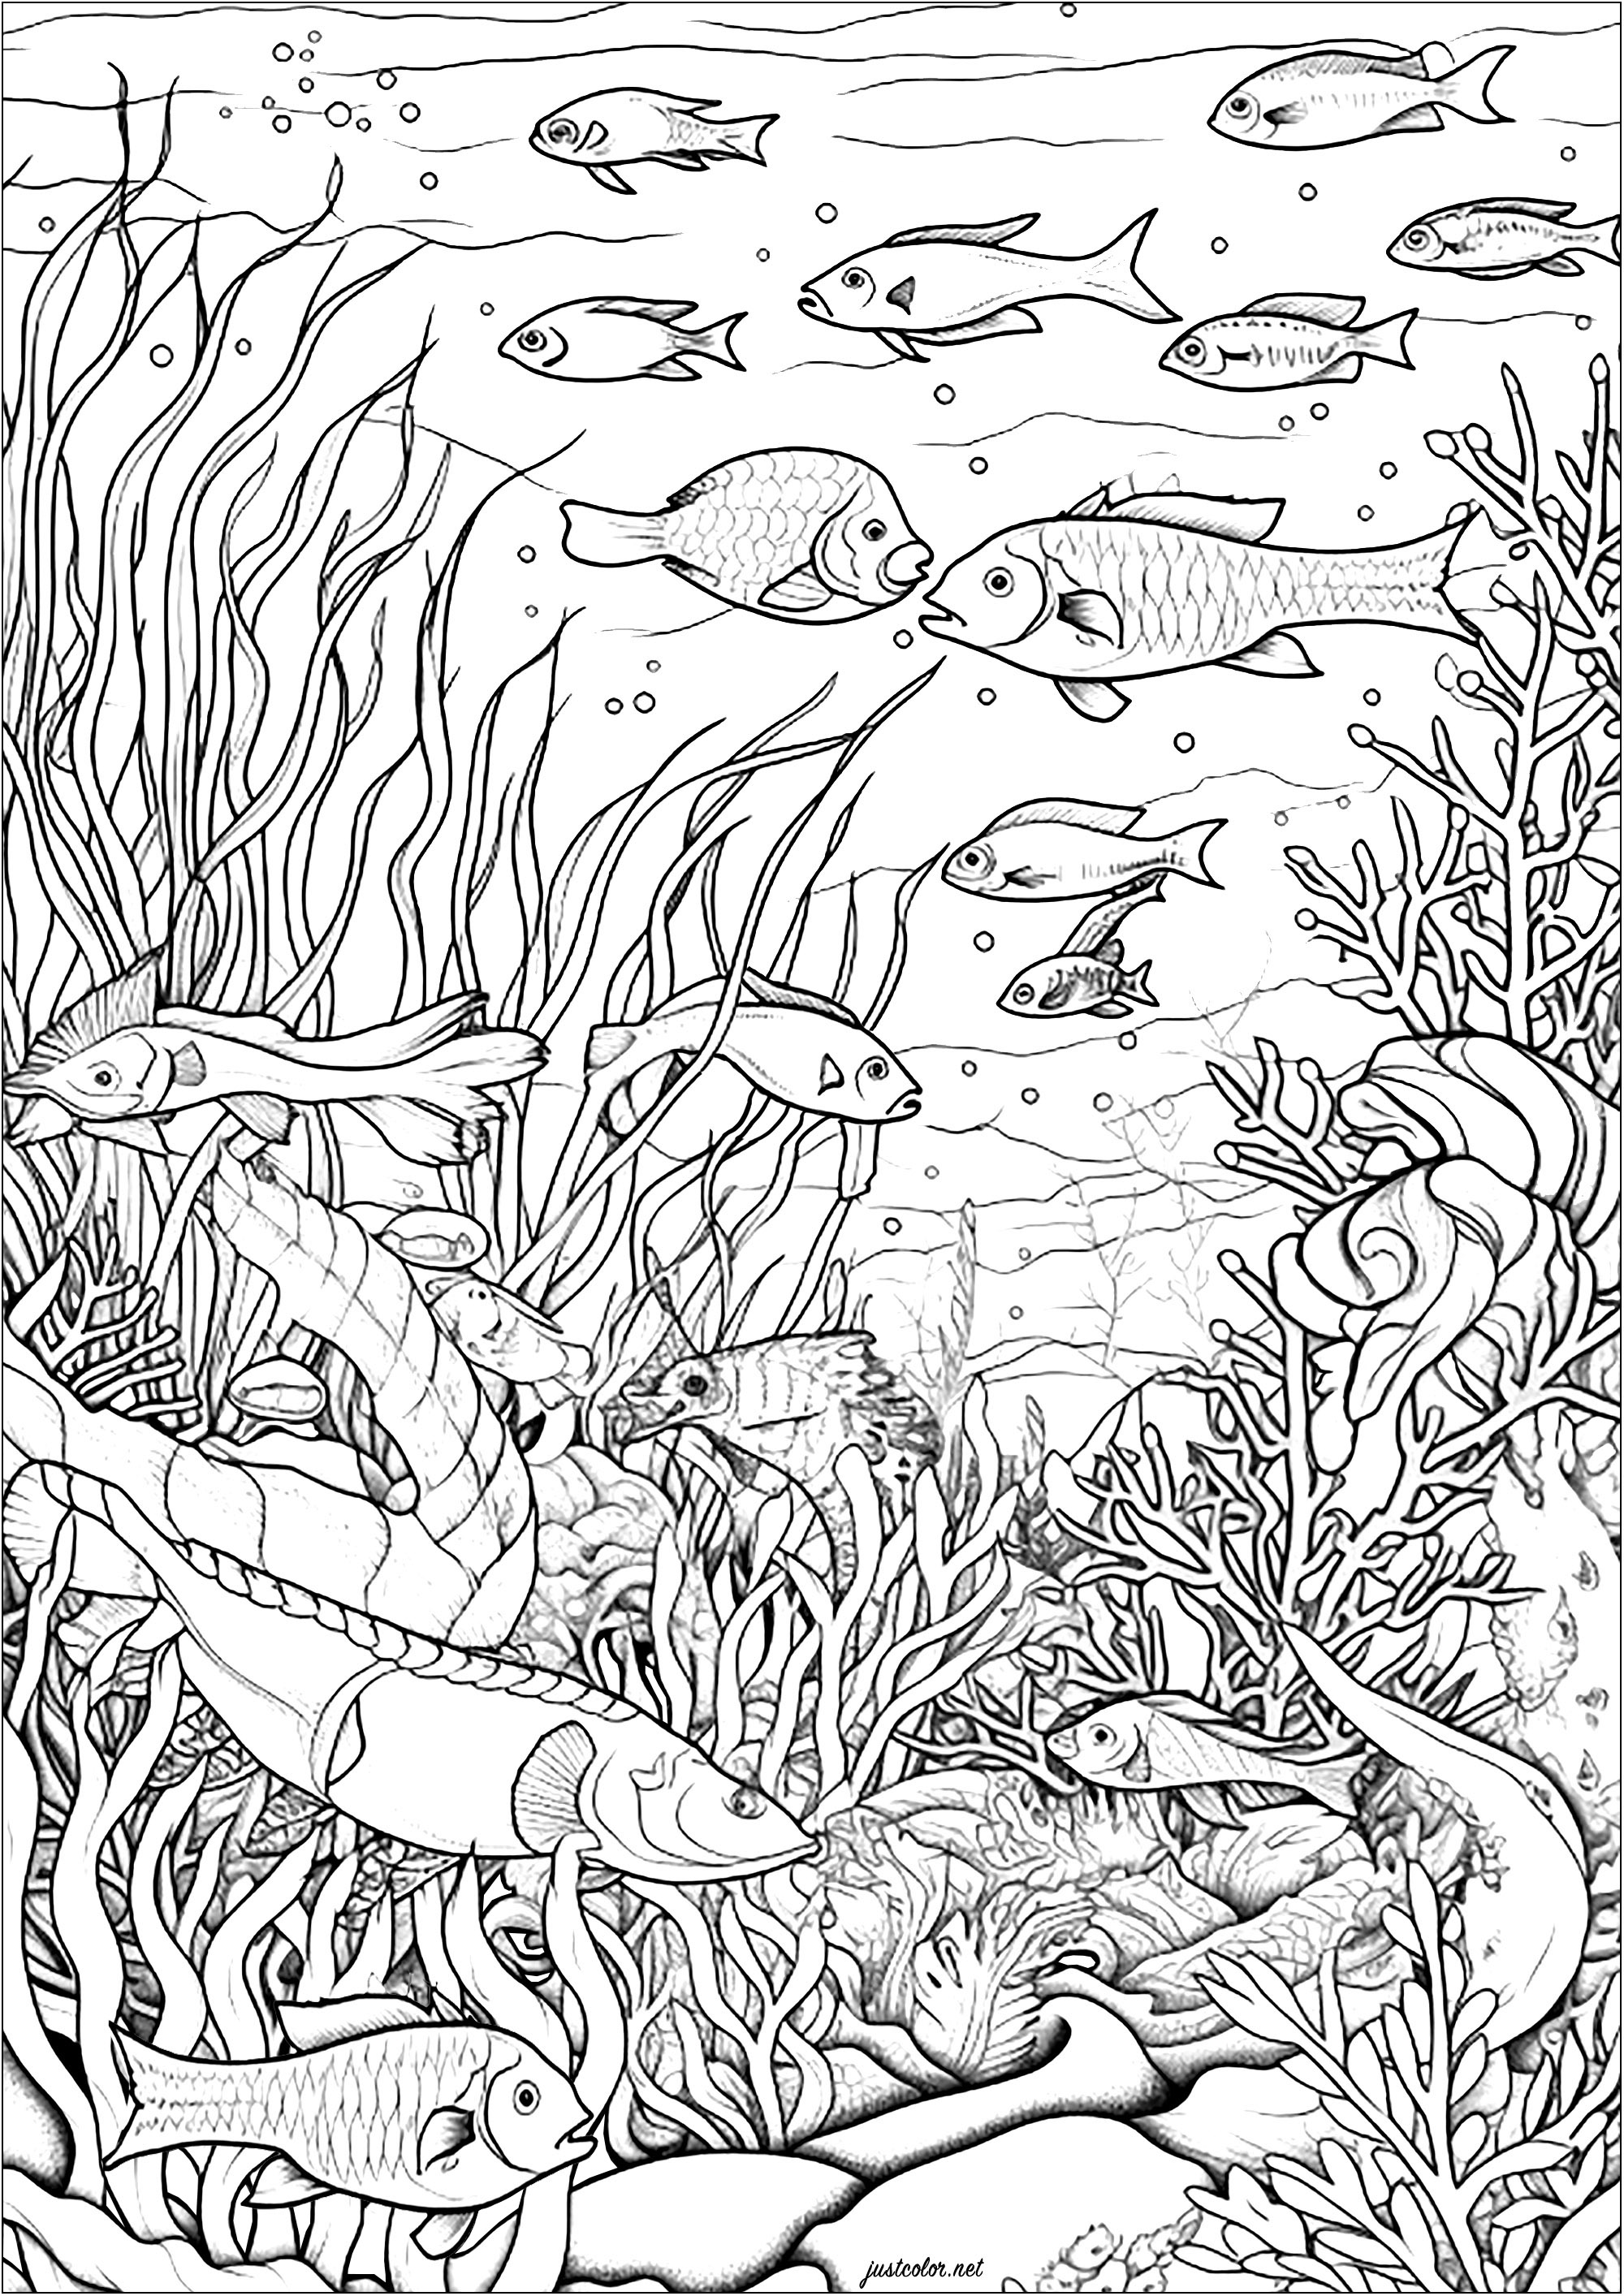 Fisch und Meeresalgen. Diese Malvorlage ist eine wunderbare aquatische Malerei.Es stellt eine heitere und beruhigende Unterwasser-Szene.Sie können viele Fische schwimmen in den Meeresboden mit Algen gefüllt zu sehen.